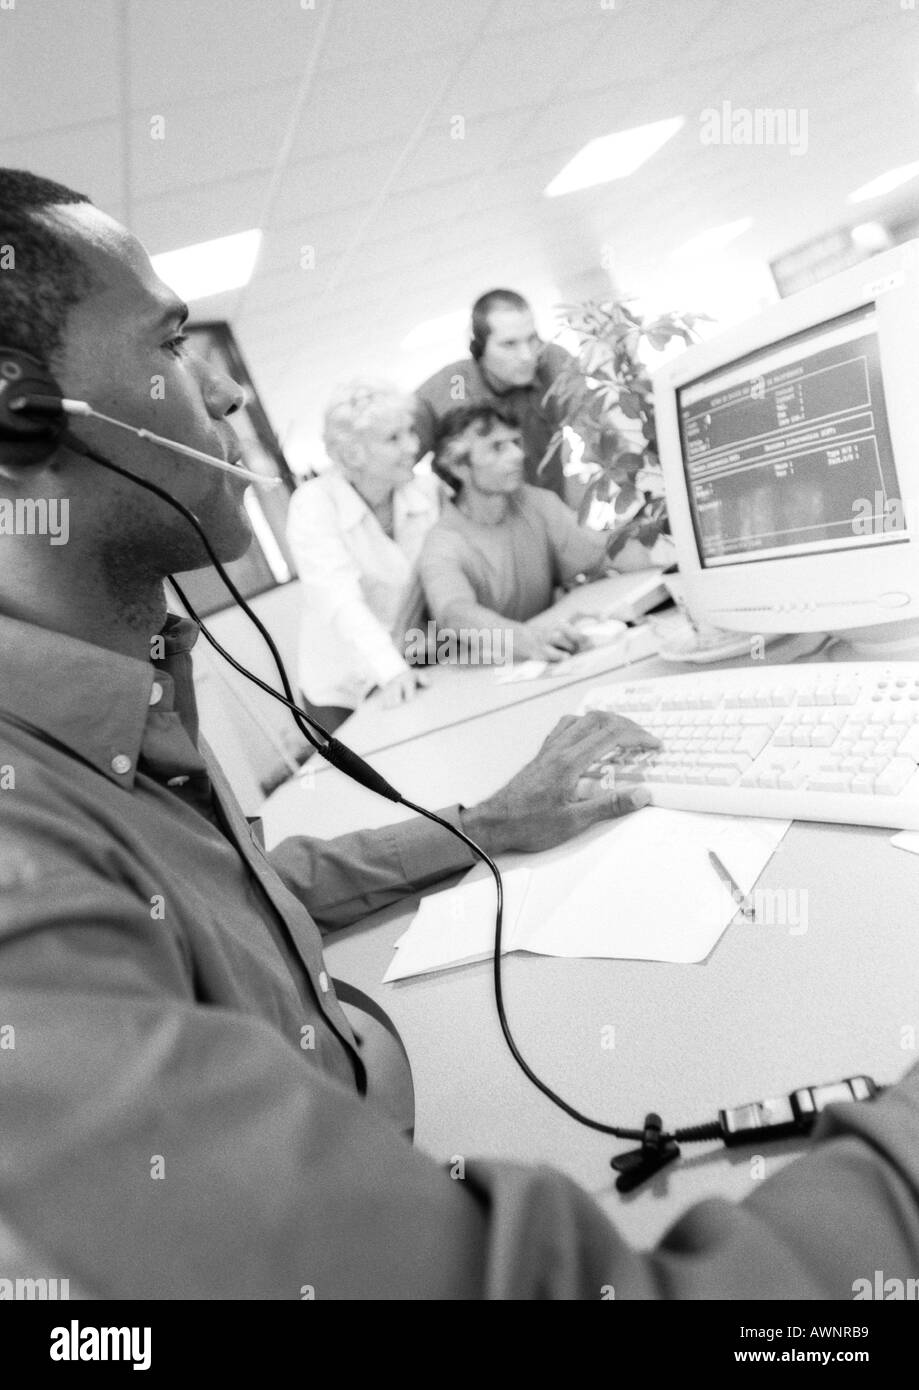 Mann mit Kopfhörer mit Computer, Kolleginnen und Kollegen in der Hintergrund jedoch unscharf, B&W Stockfoto